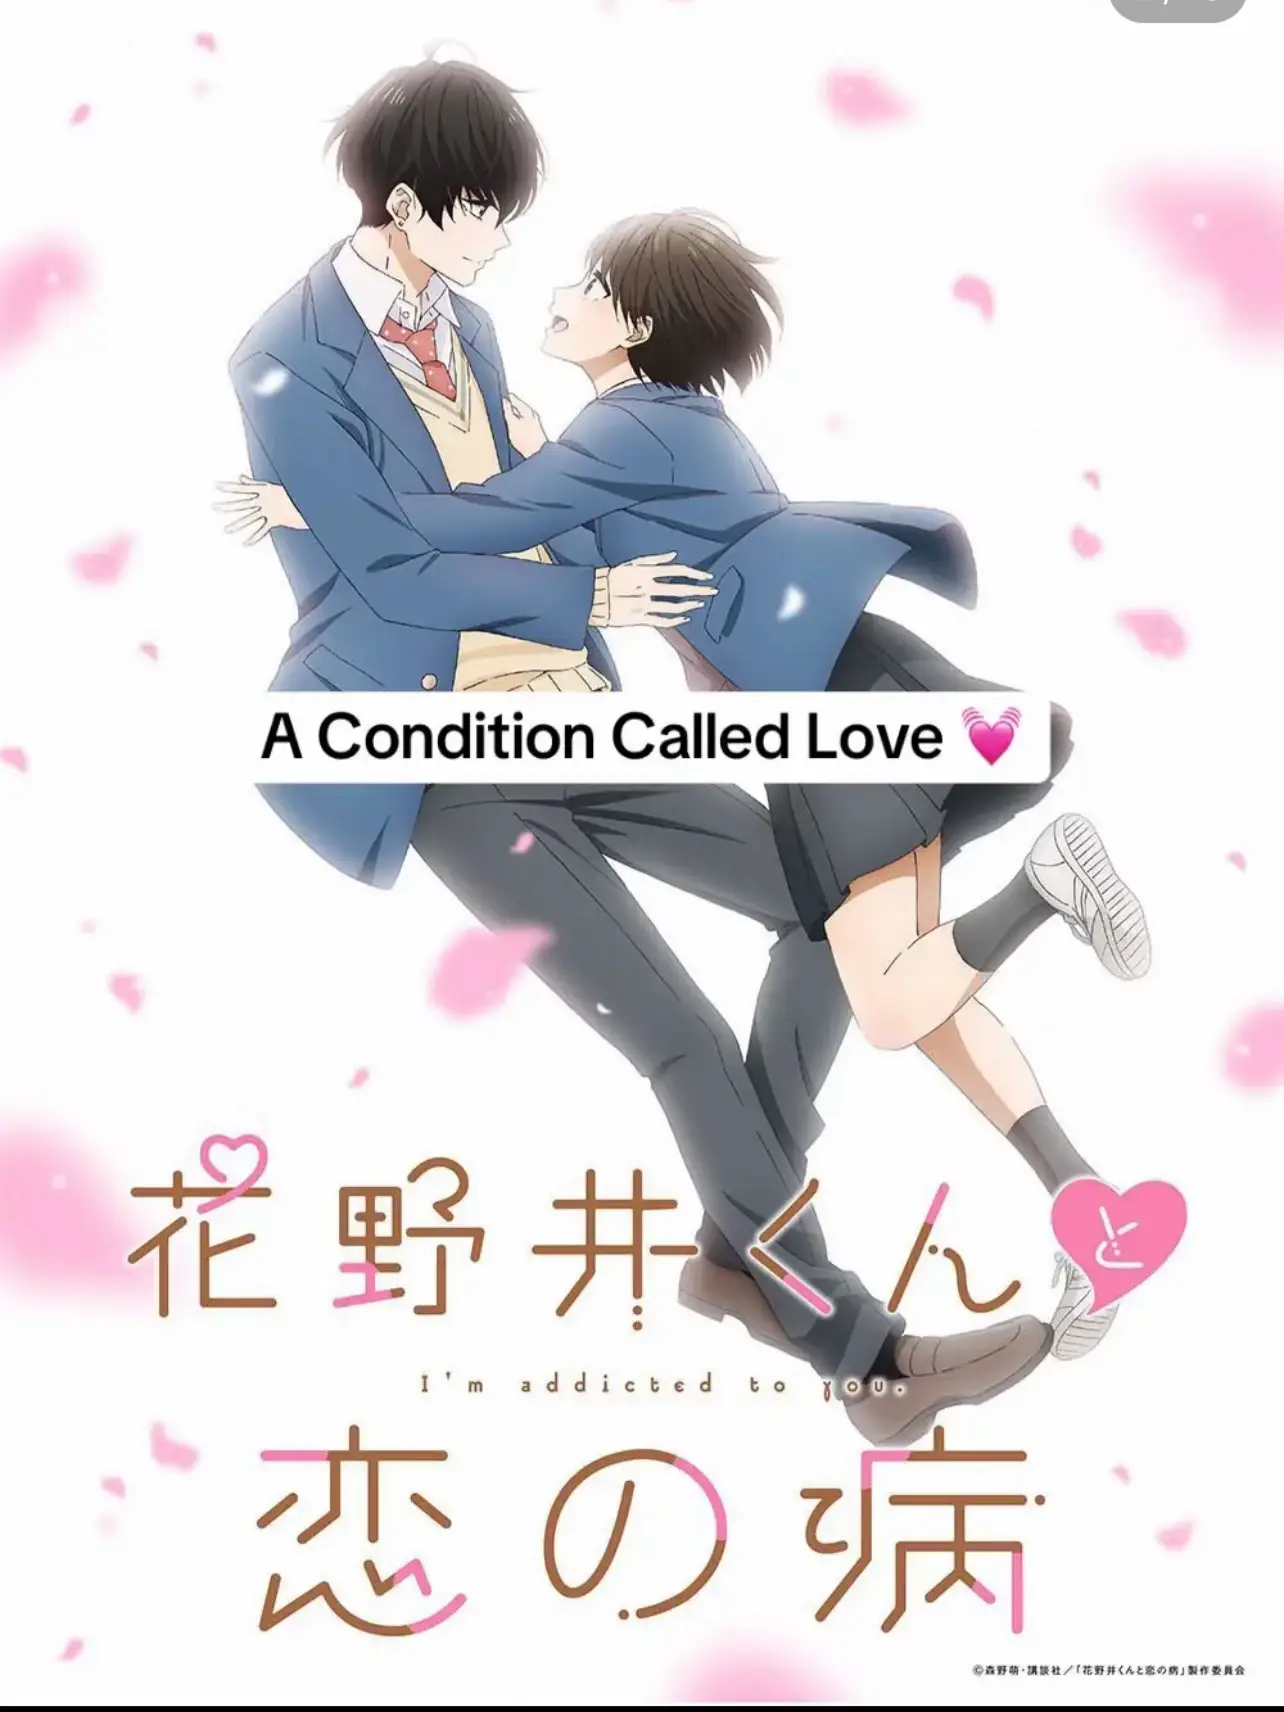 Anime Love Shows - Lemon8 Search